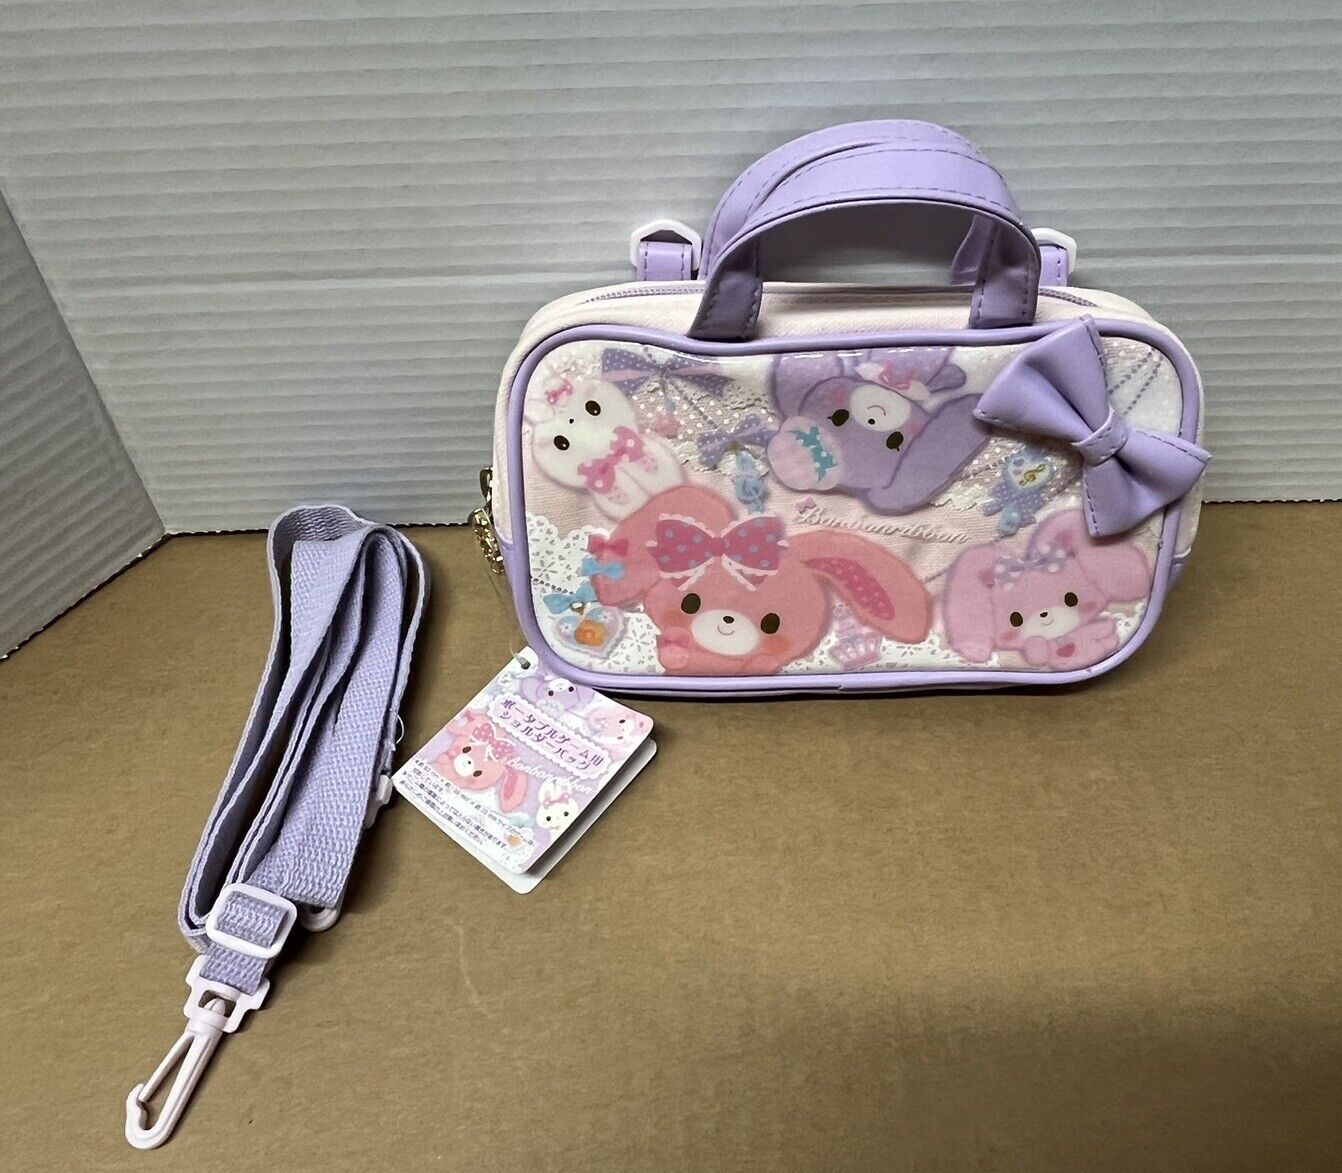 Sanrio Smiles Bonbonribbon Sugar Handbag Purse W/ Shoulder Strap Vinyl Cloth  D4